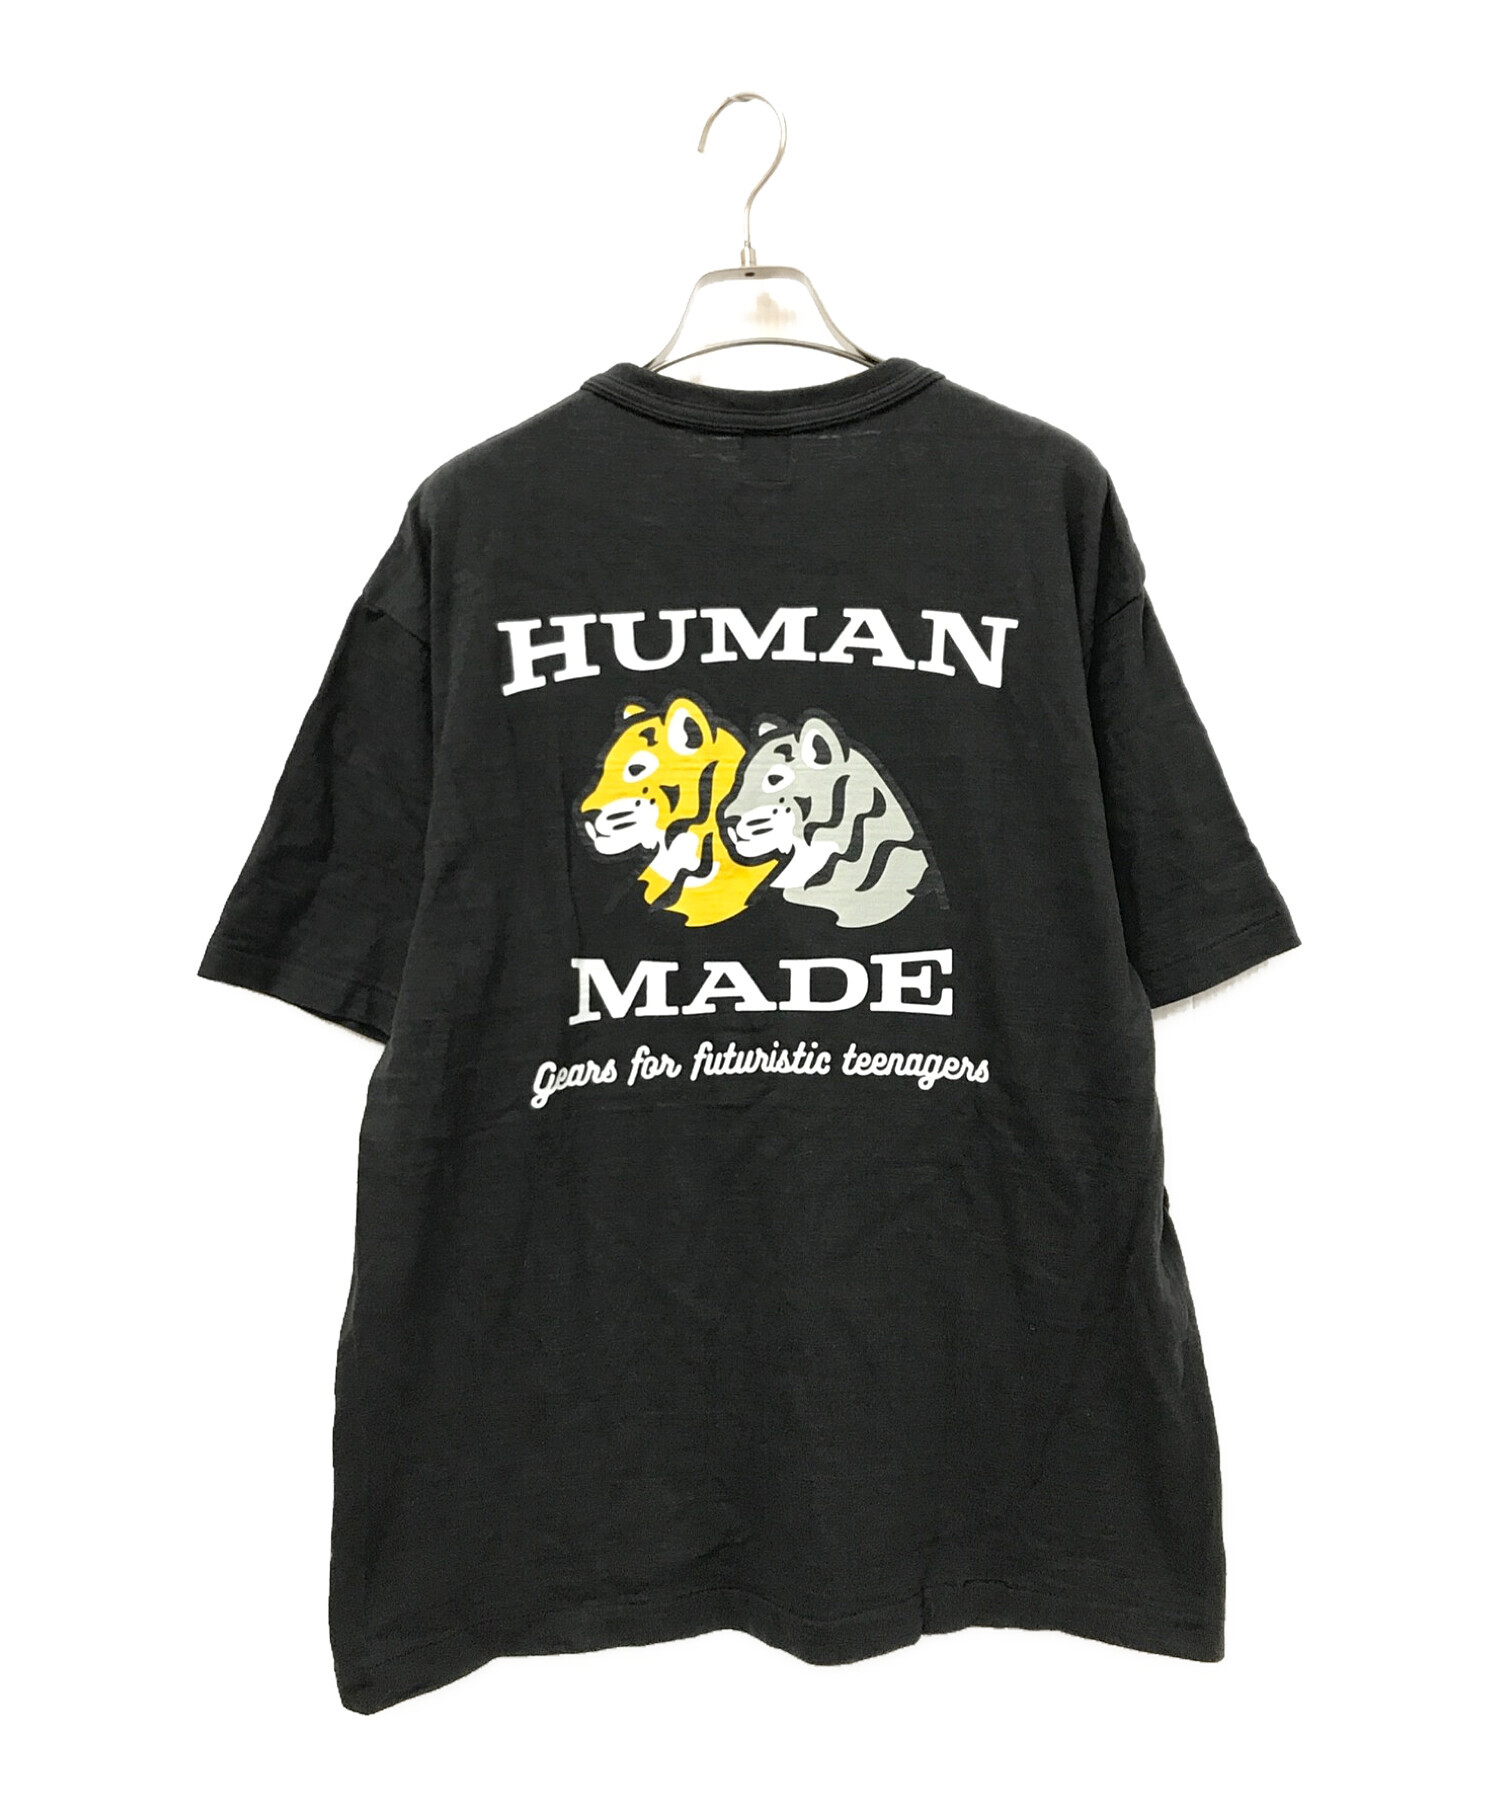 中古・古着通販】HUMAN MADE (ヒューマンメイド) tiger t-shirts